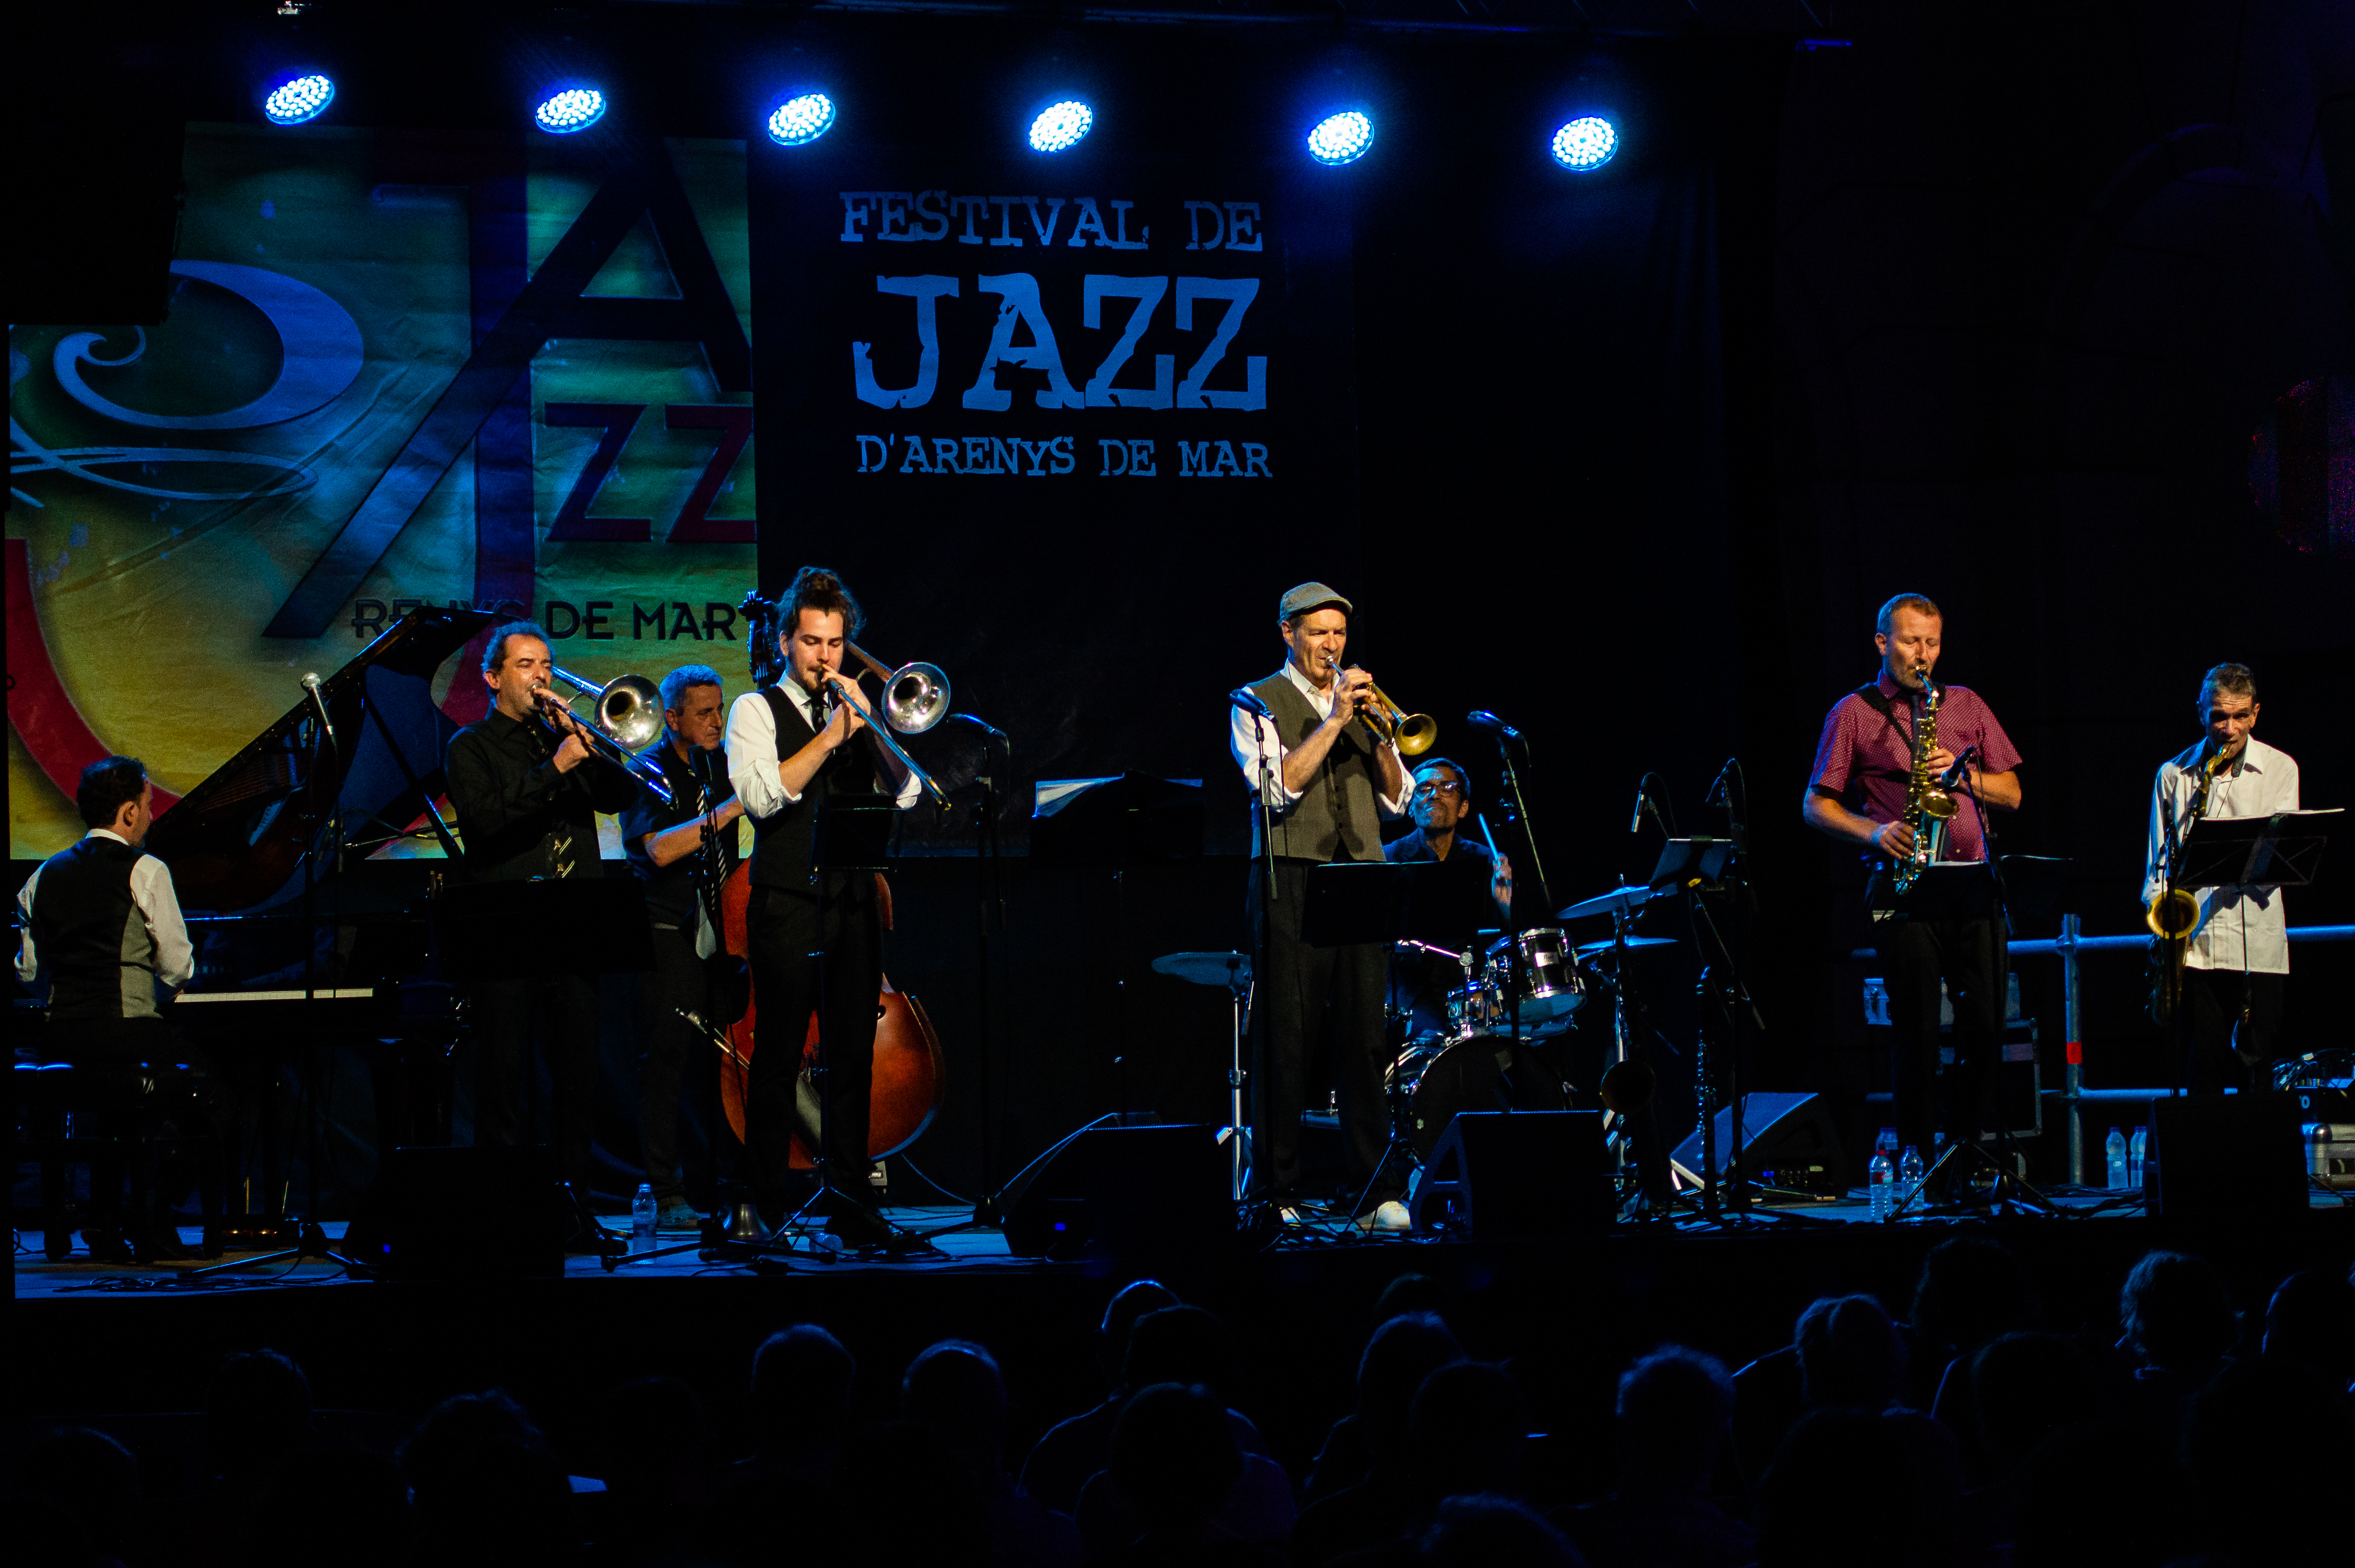 Imatges del 29 Festival de Jazz d'Arenys de Mar - 2021 - Foto 21429589